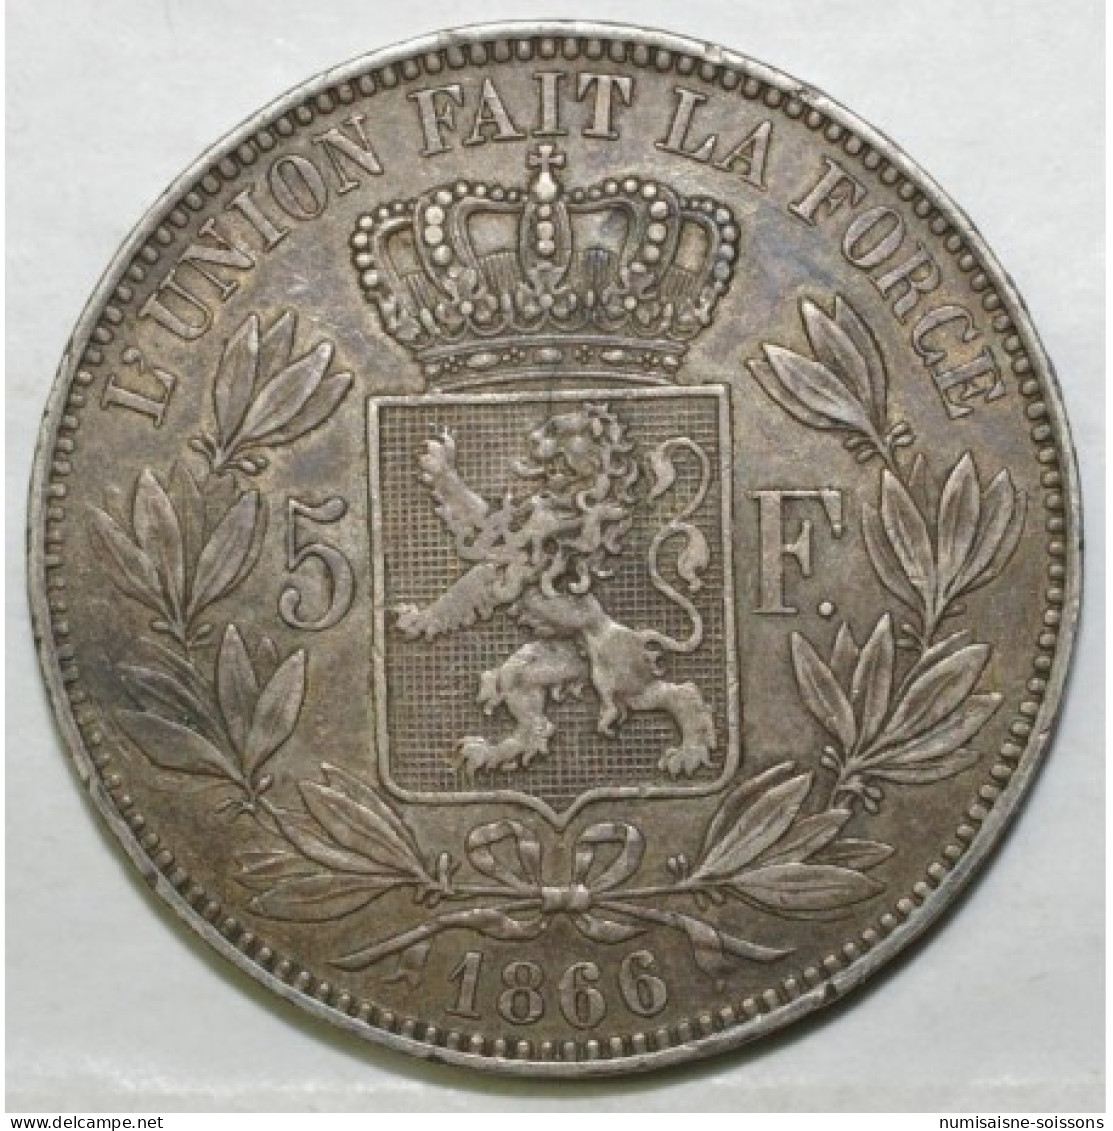 BELGIUM - KM 24 - 5 FRANCS 1866 - POINT APRES LE F - LEOPOLD II -  TTB - 5 Francs